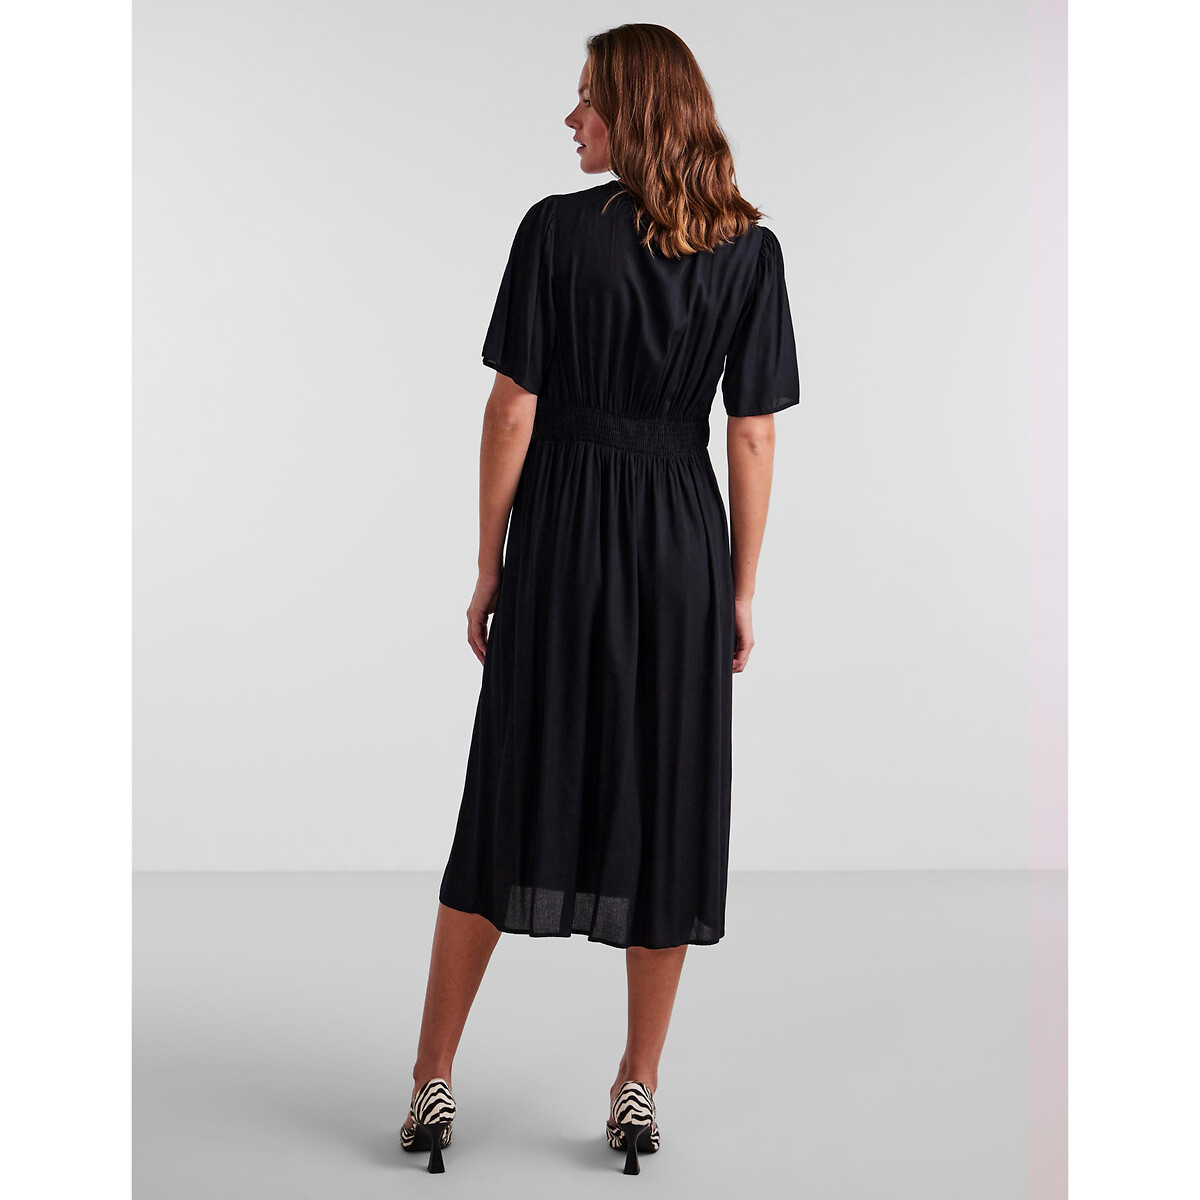 Платье Миди на пуговицах S черный LaRedoute, размер S - фото 4